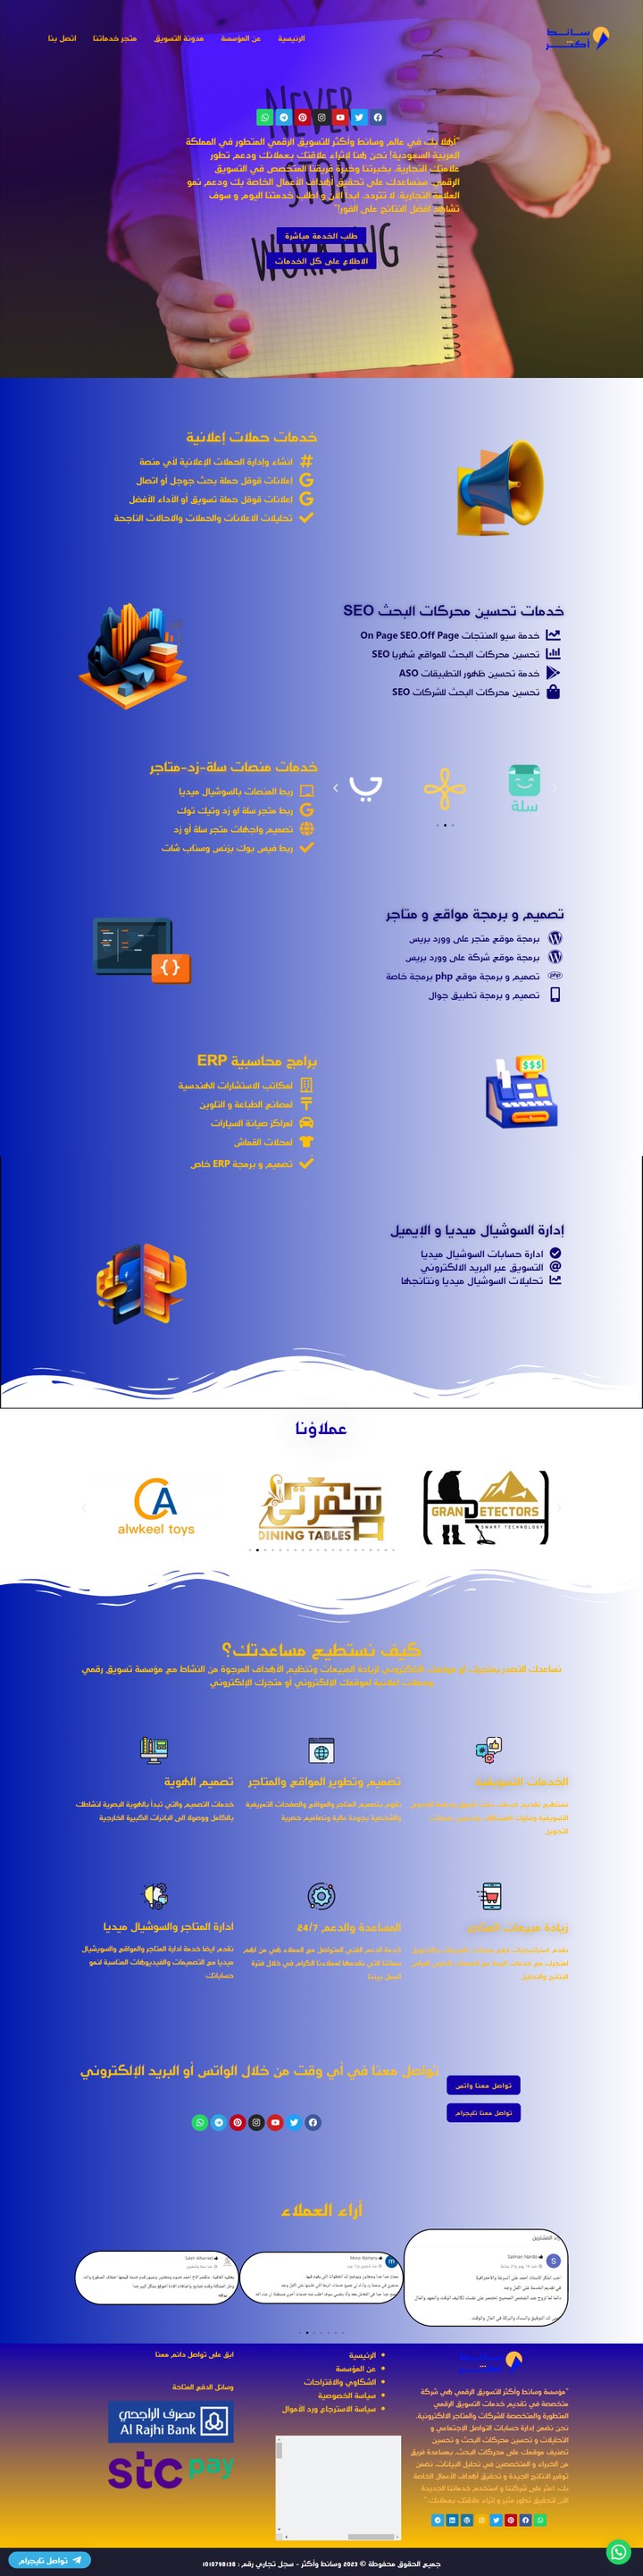 تصميم موقع الكتروني لمؤسسة تسويق سعودية